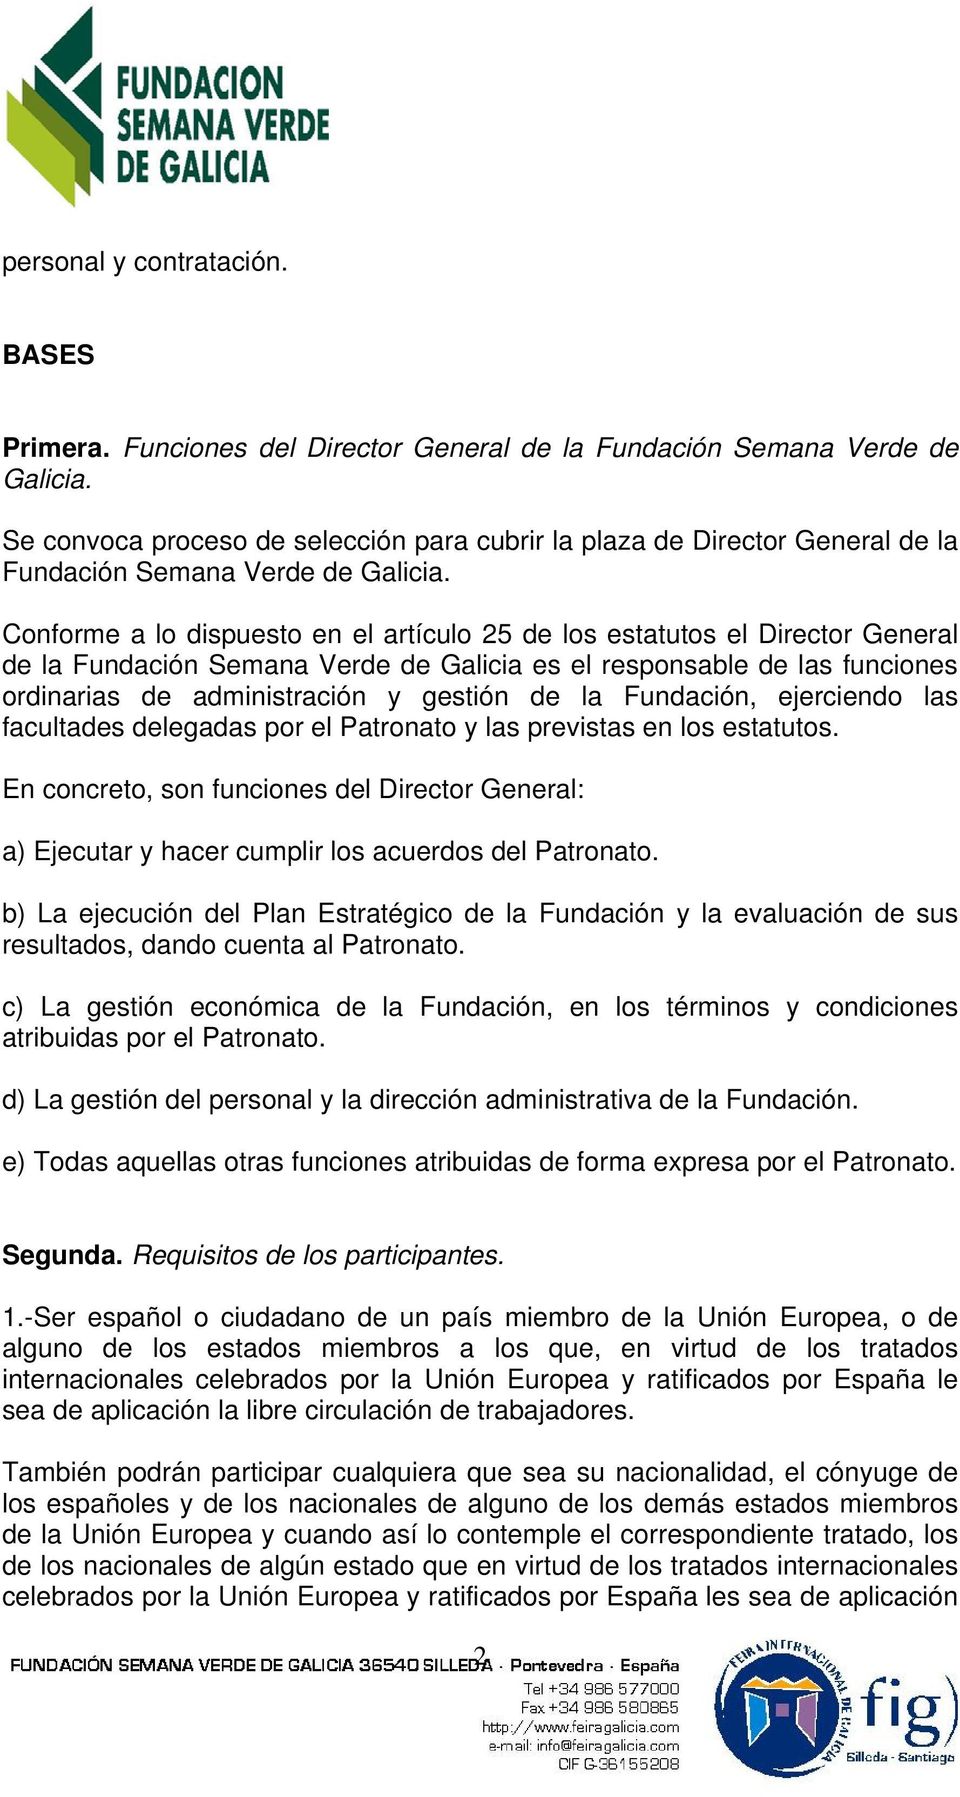 Conforme a lo dispuesto en el artículo 25 de los estatutos el Director General de la Fundación Semana Verde de Galicia es el responsable de las funciones ordinarias de administración y gestión de la